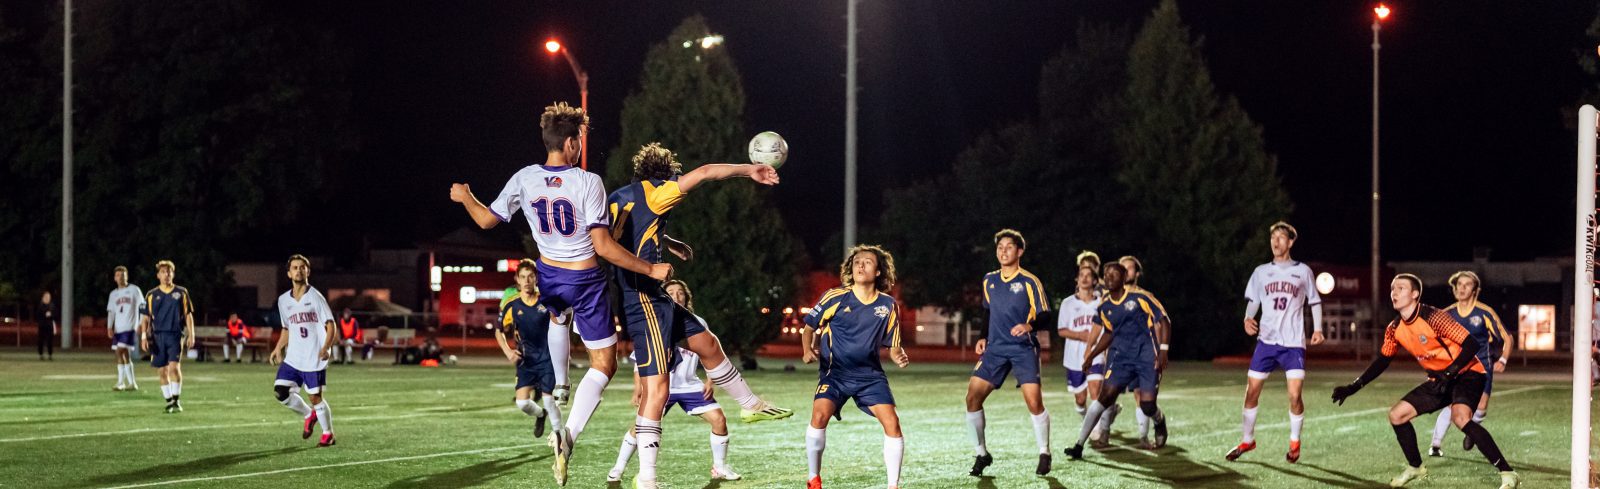 photo d'action d'un match de soccer masculin montrant des athlètes se disputant un ballon aérien